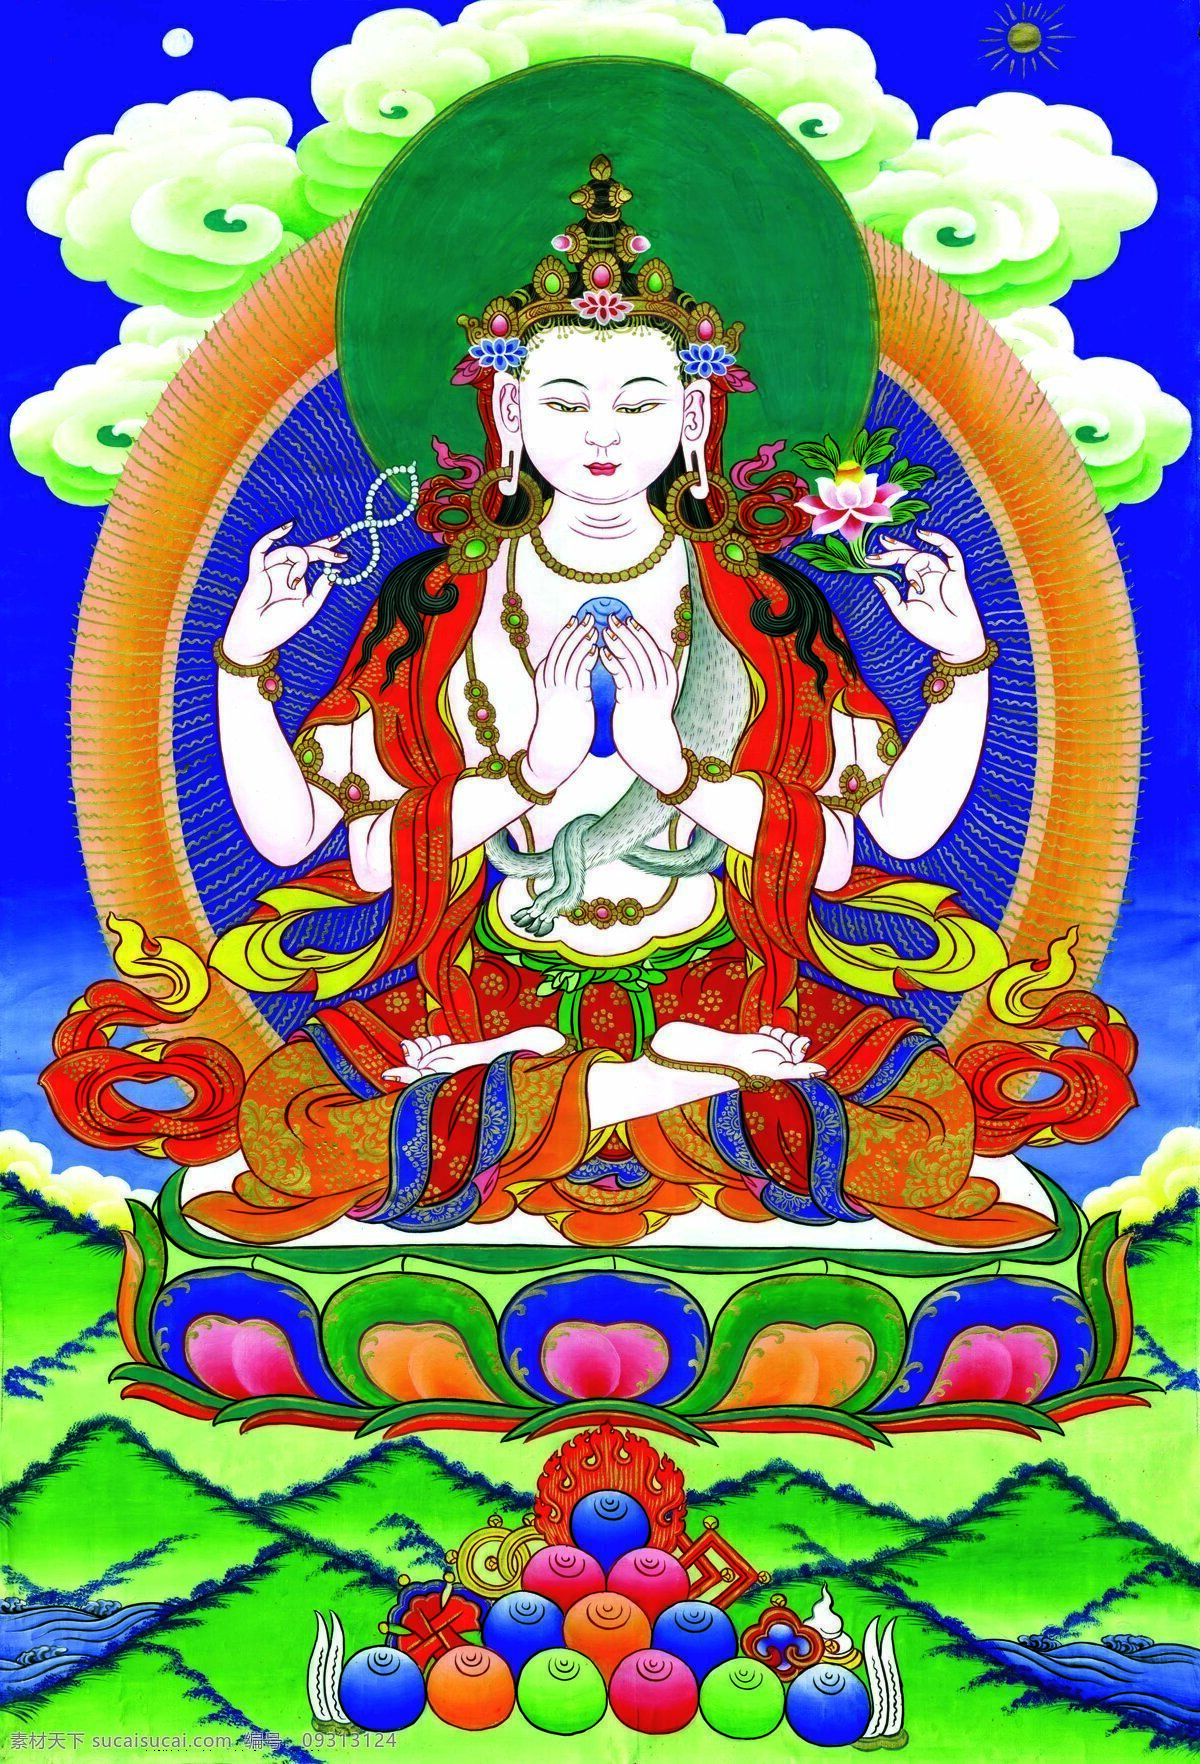 唐卡 佛教 藏传佛教 佛 宗教 宗教信仰 菩萨 西藏 民族 工艺 花纹 观音 绘画 艺术 绘画书法 文化艺术